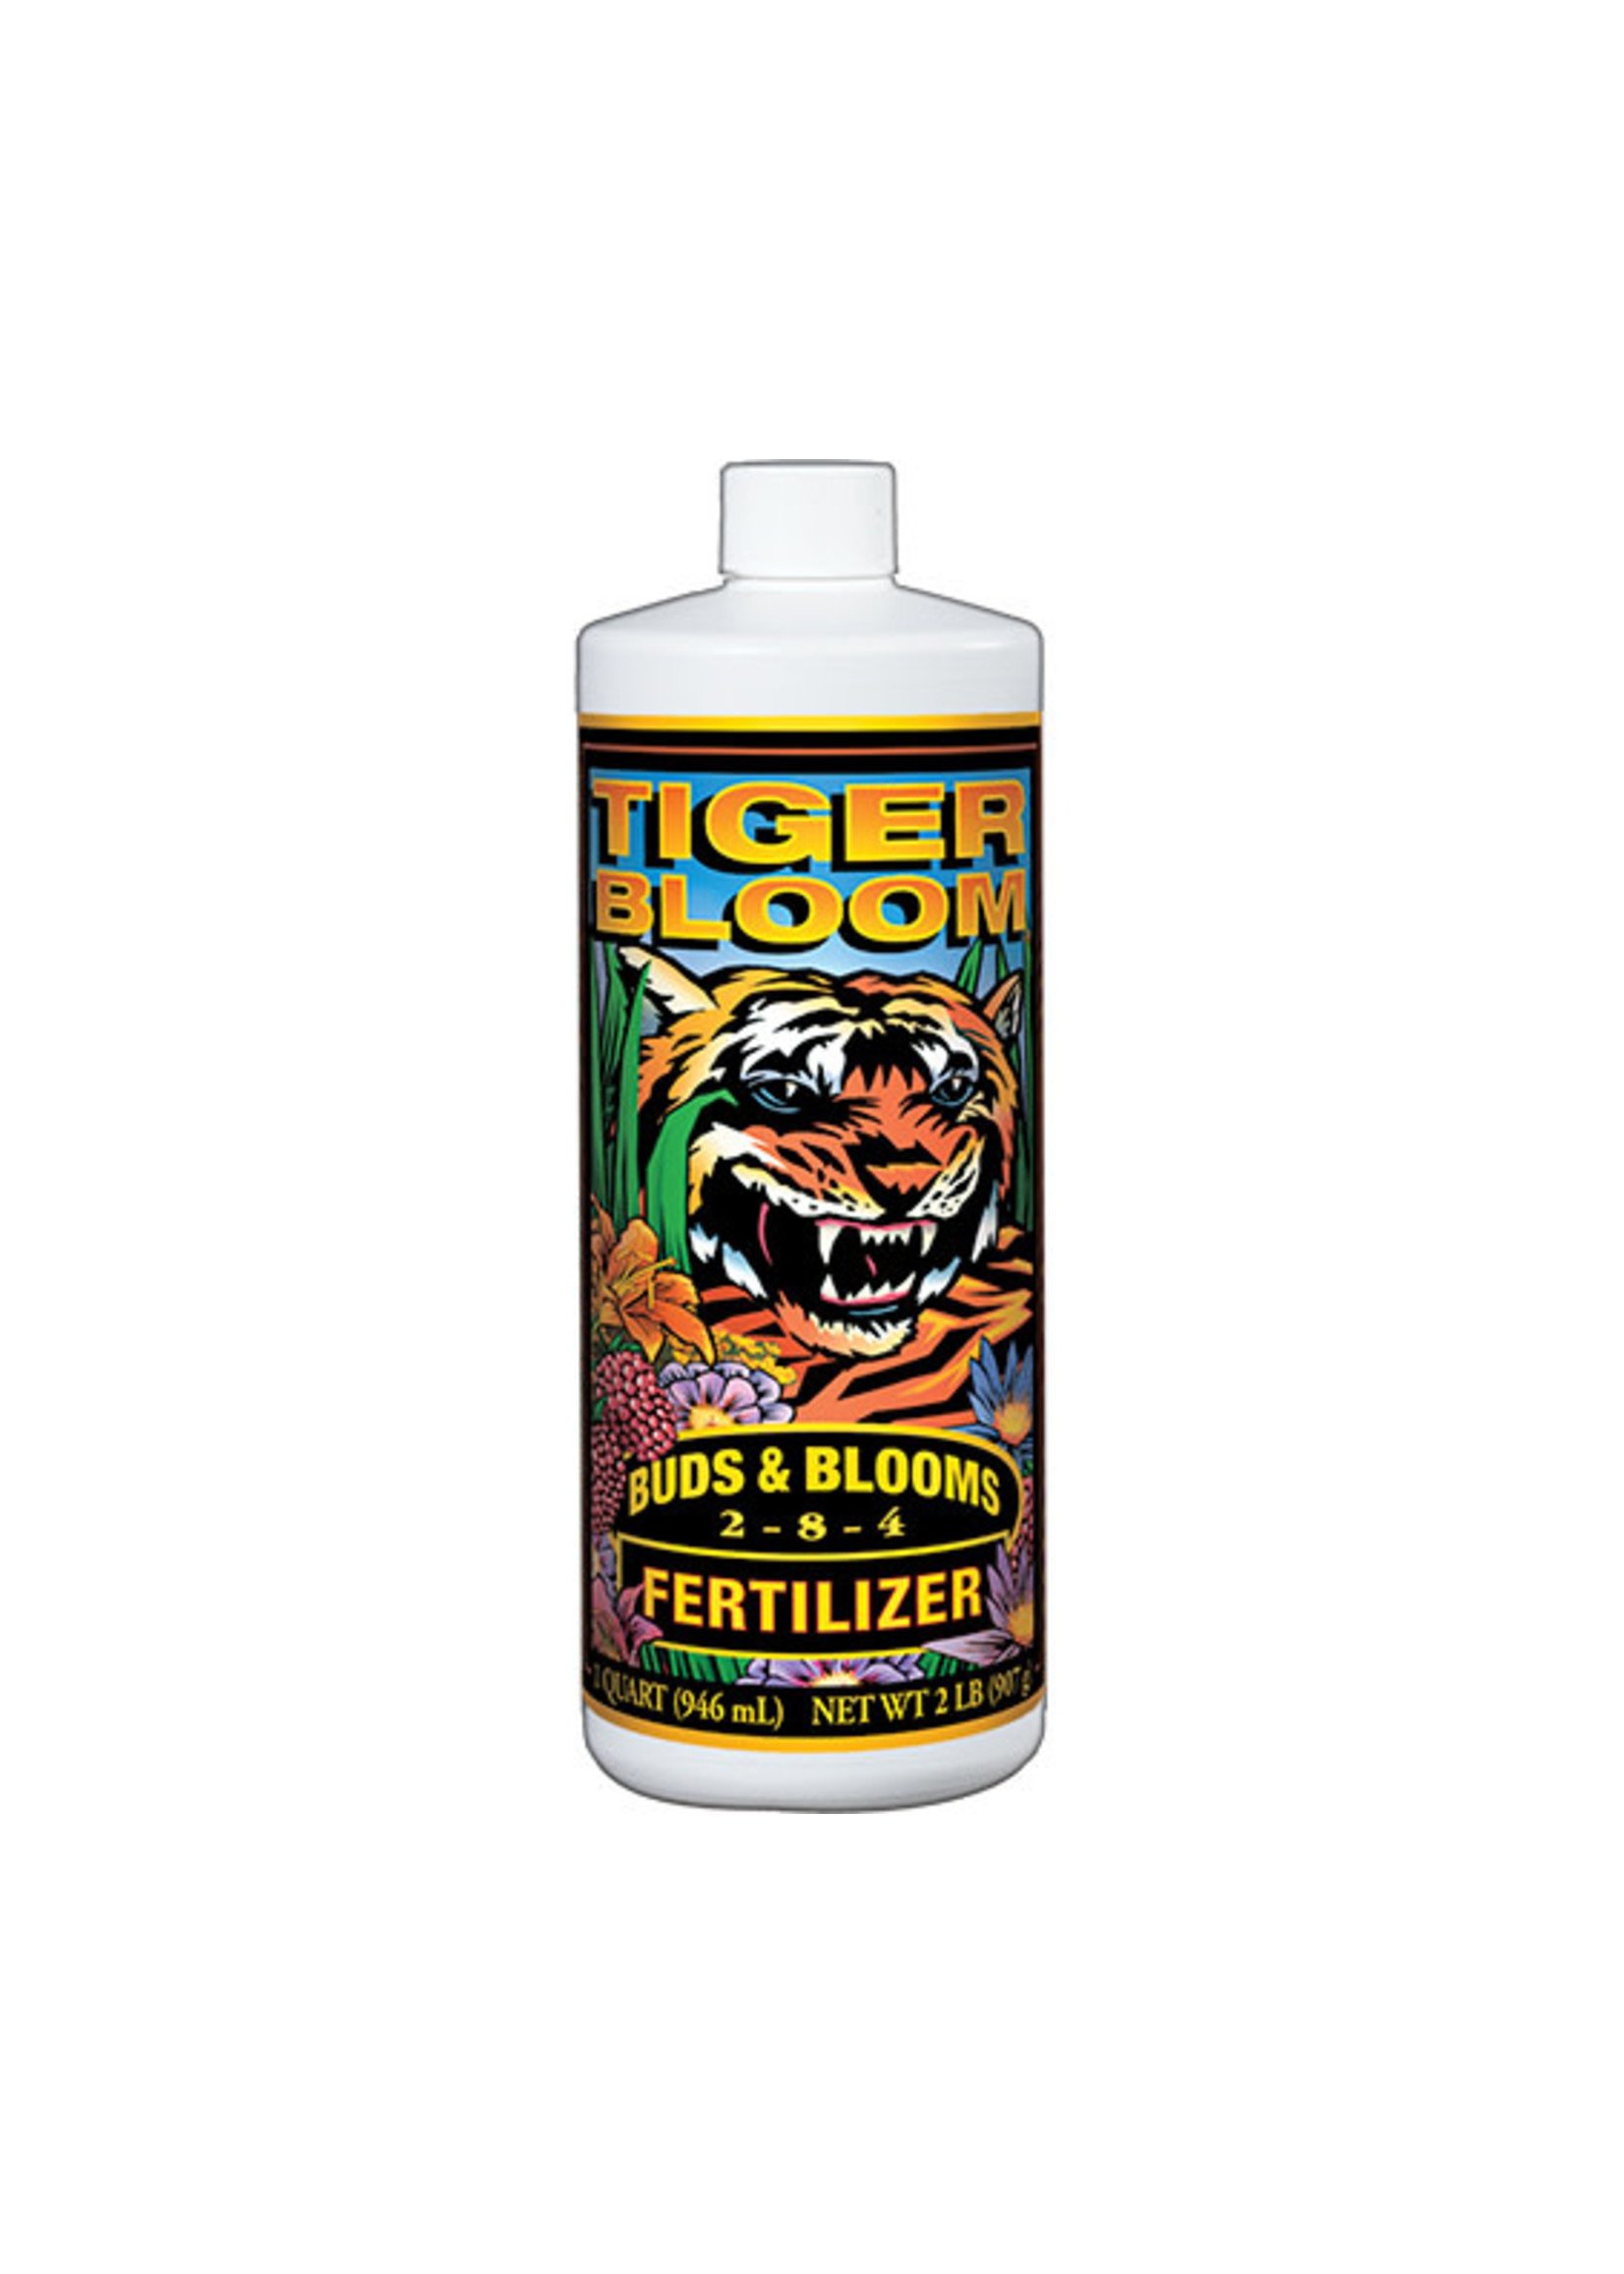 Fox Farm Tiger bloom Liquid 1L